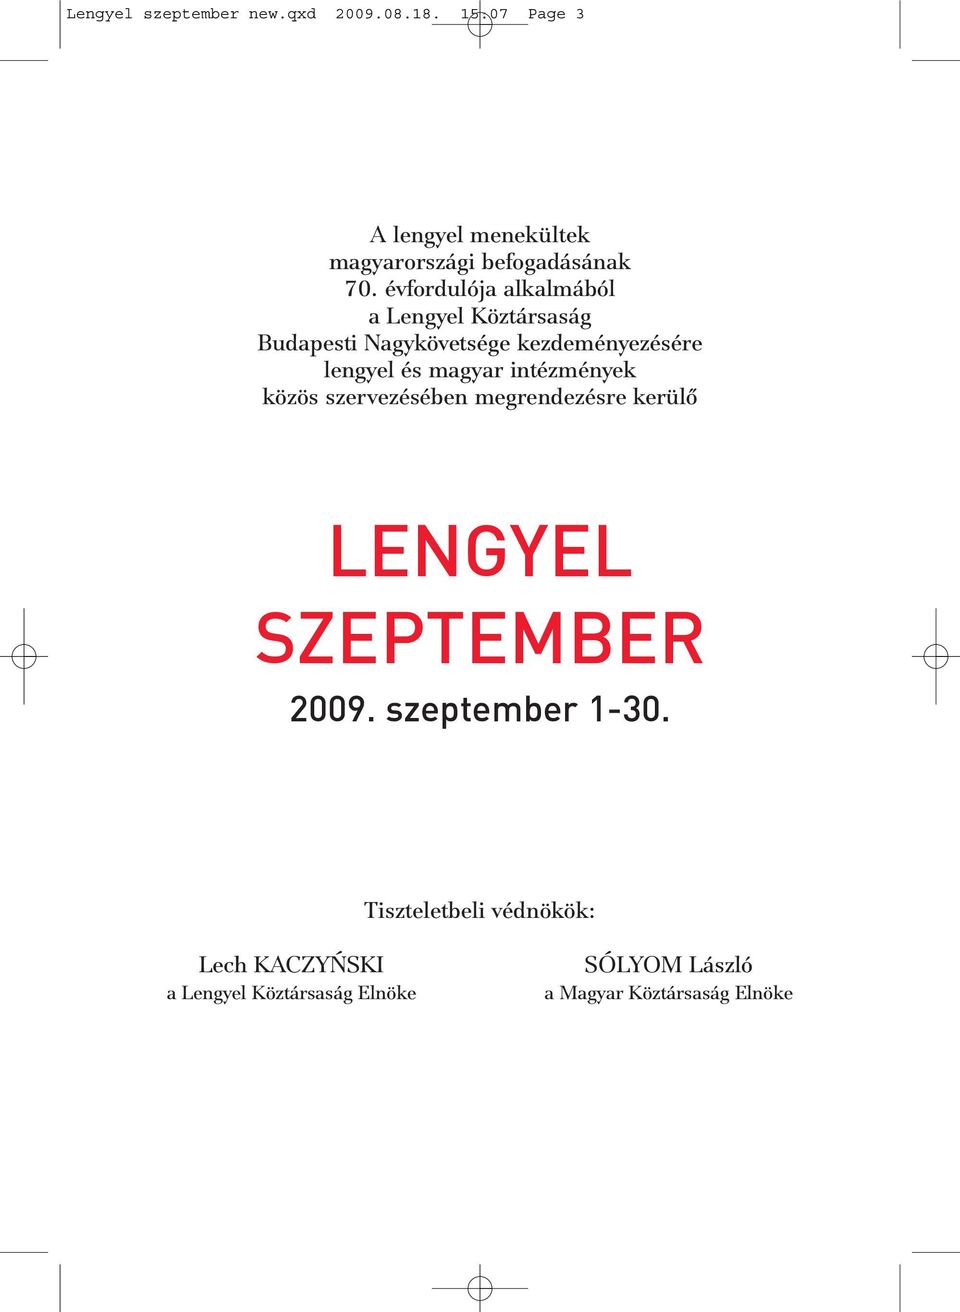 intézmények közös szervezésében megrendezésre kerülõ LENGYEL SZEPTEMBER 2009. szeptember 1-30.